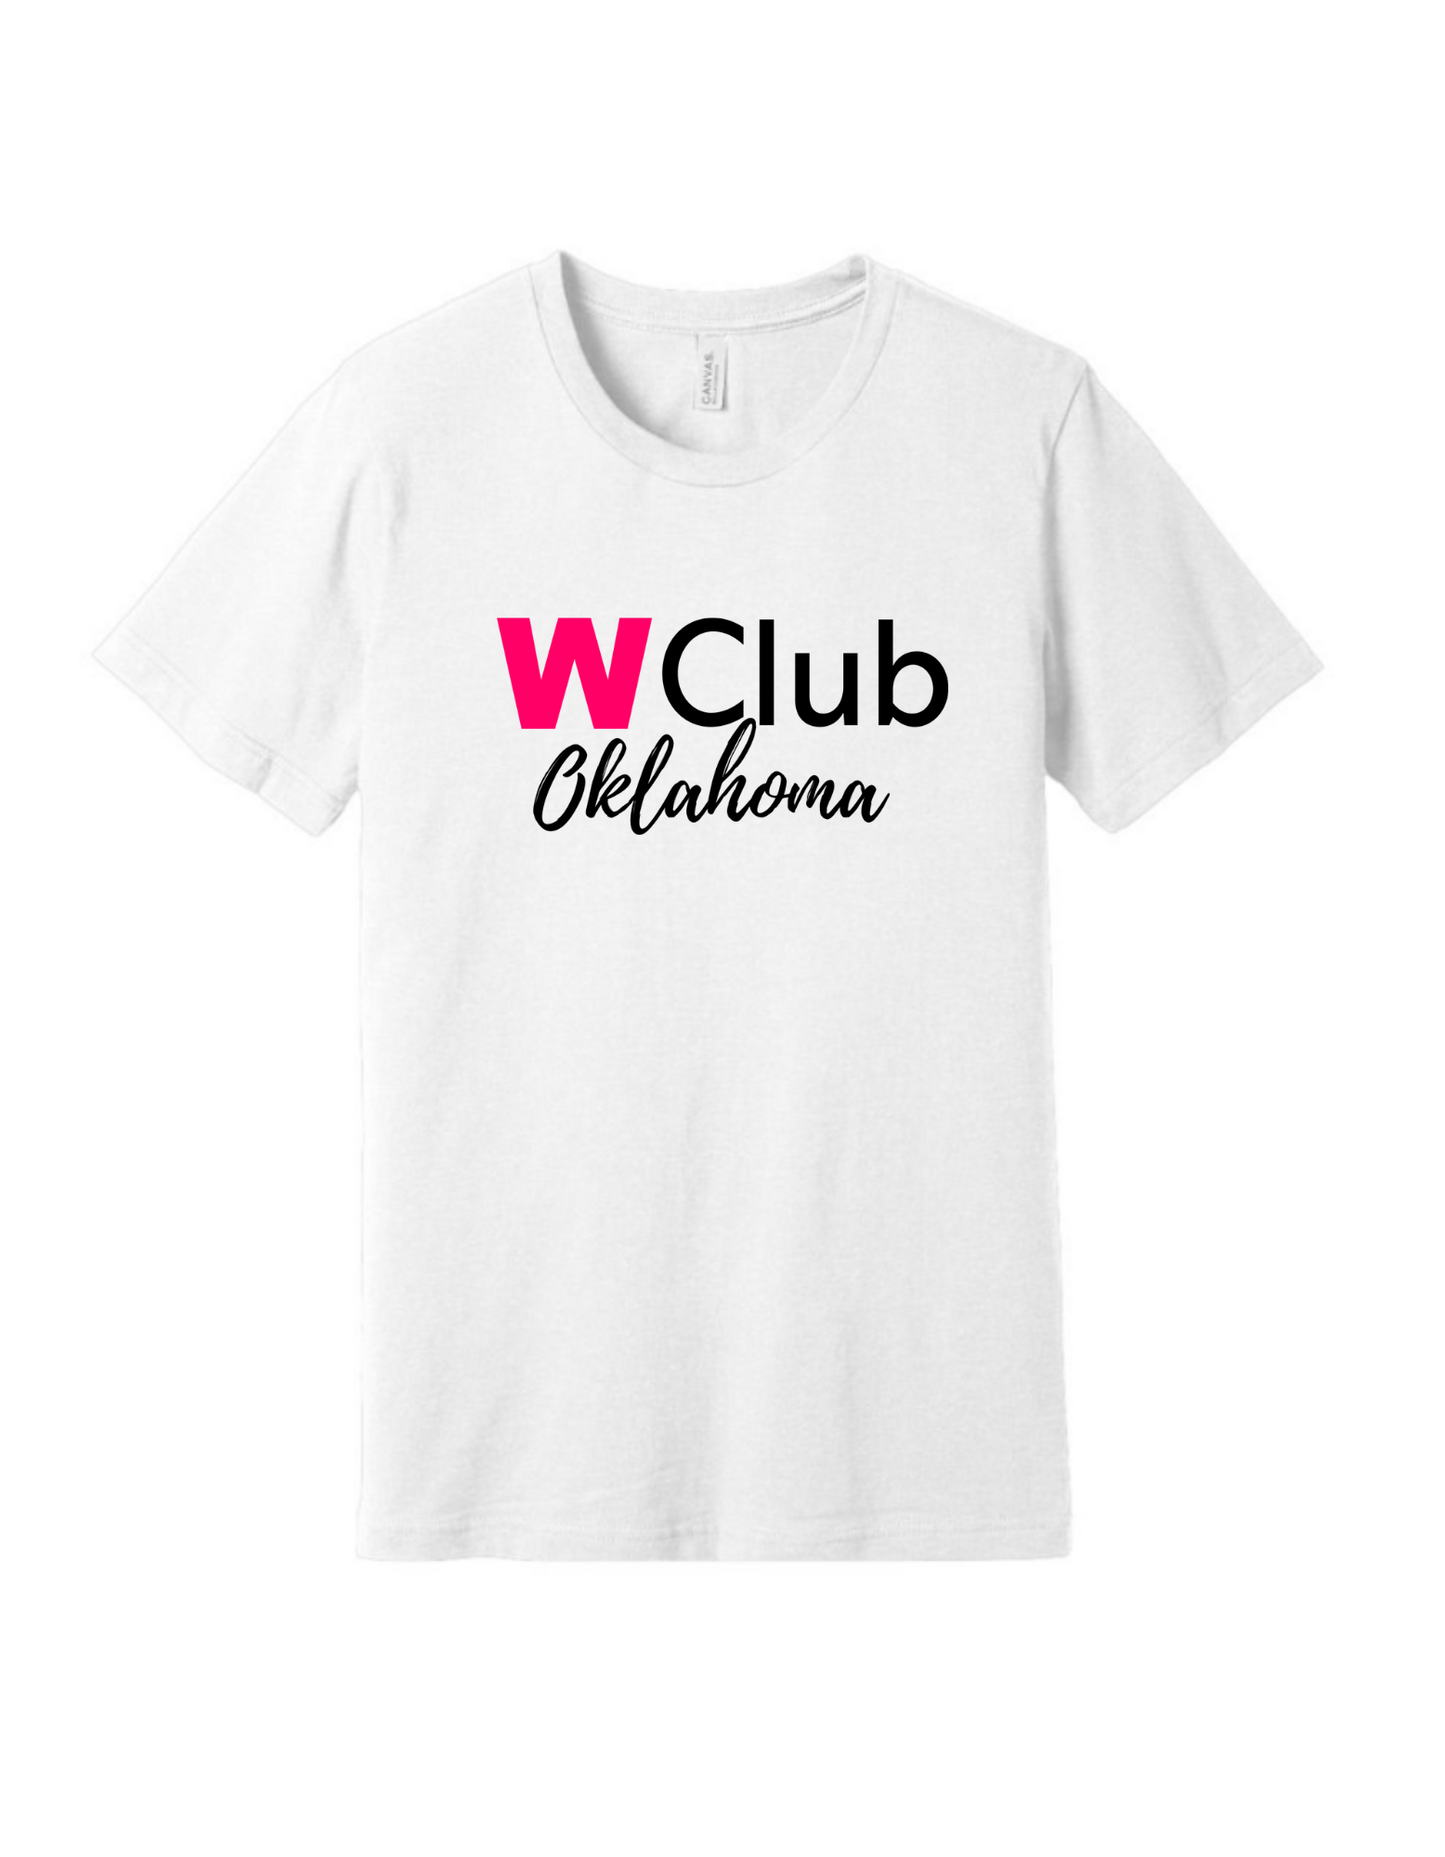 WClub Oklahoma T-Shirt